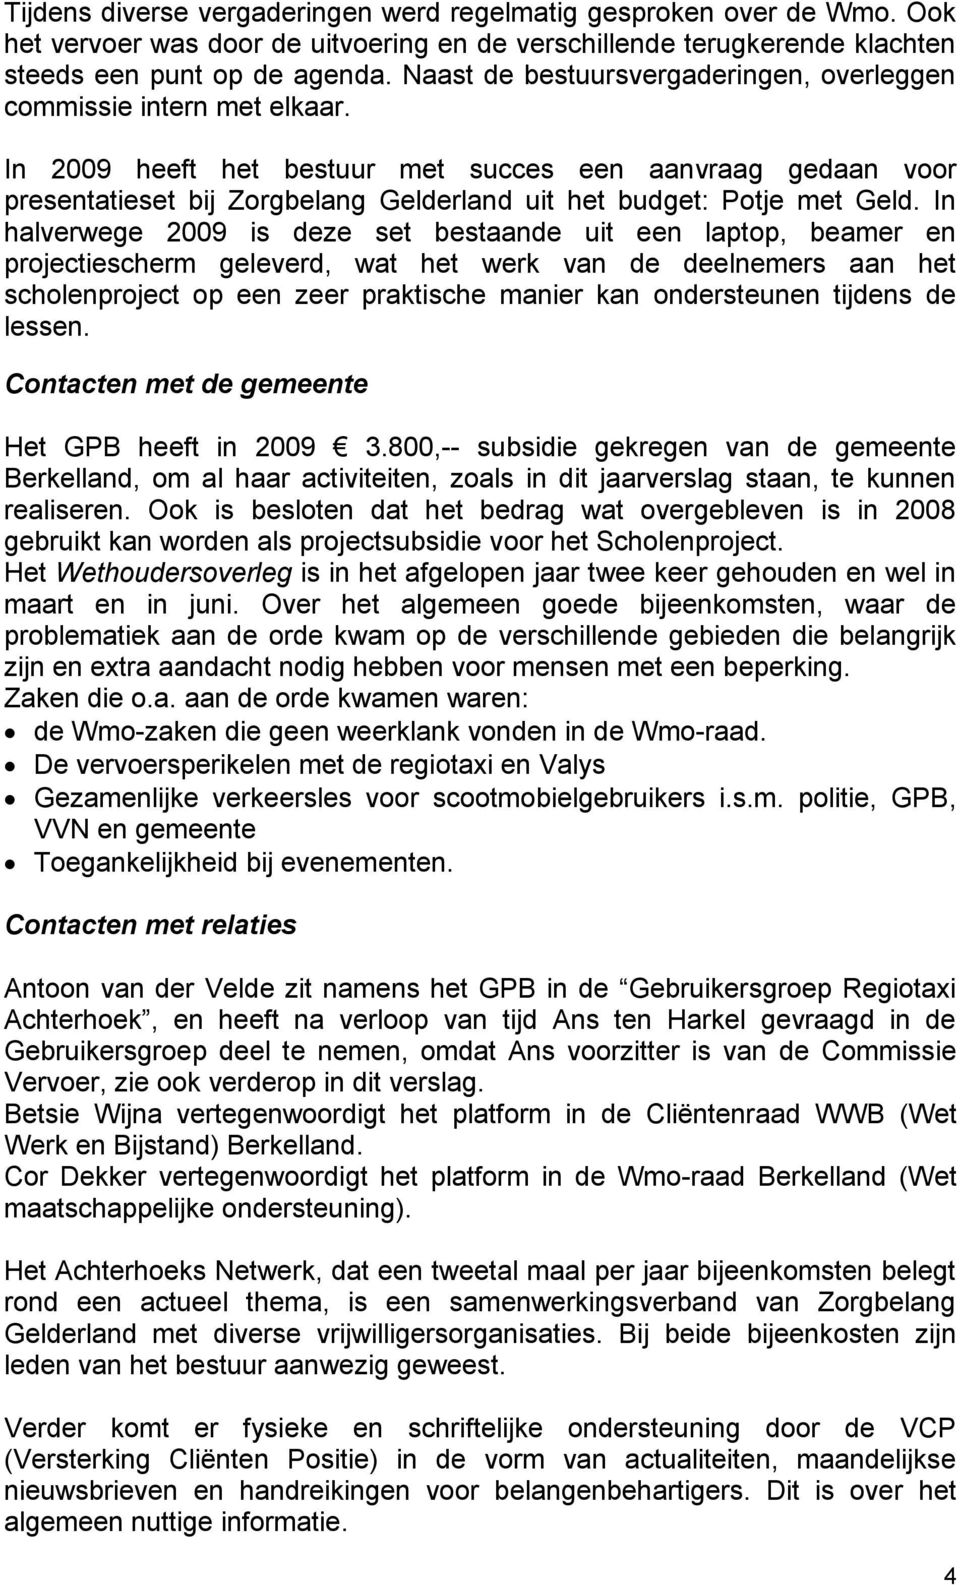 In 2009 heeft het bestuur met succes een aanvraag gedaan voor presentatieset bij Zorgbelang Gelderland uit het budget: Potje met Geld.